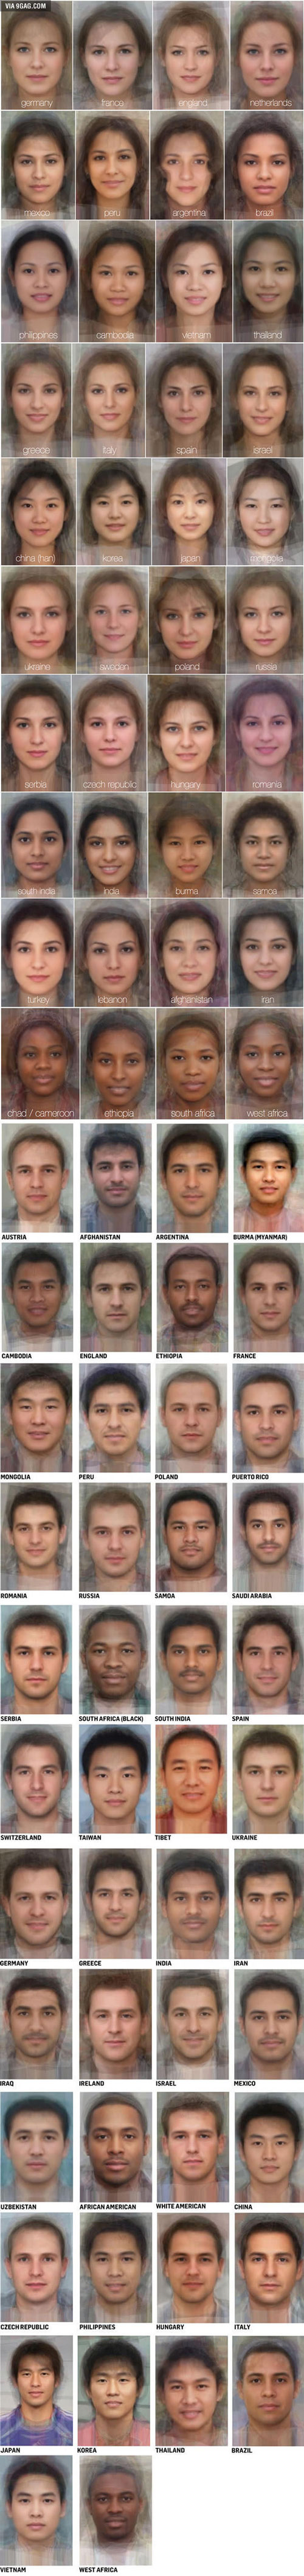 چهره مردان و زنان در كشورهاي مختلف